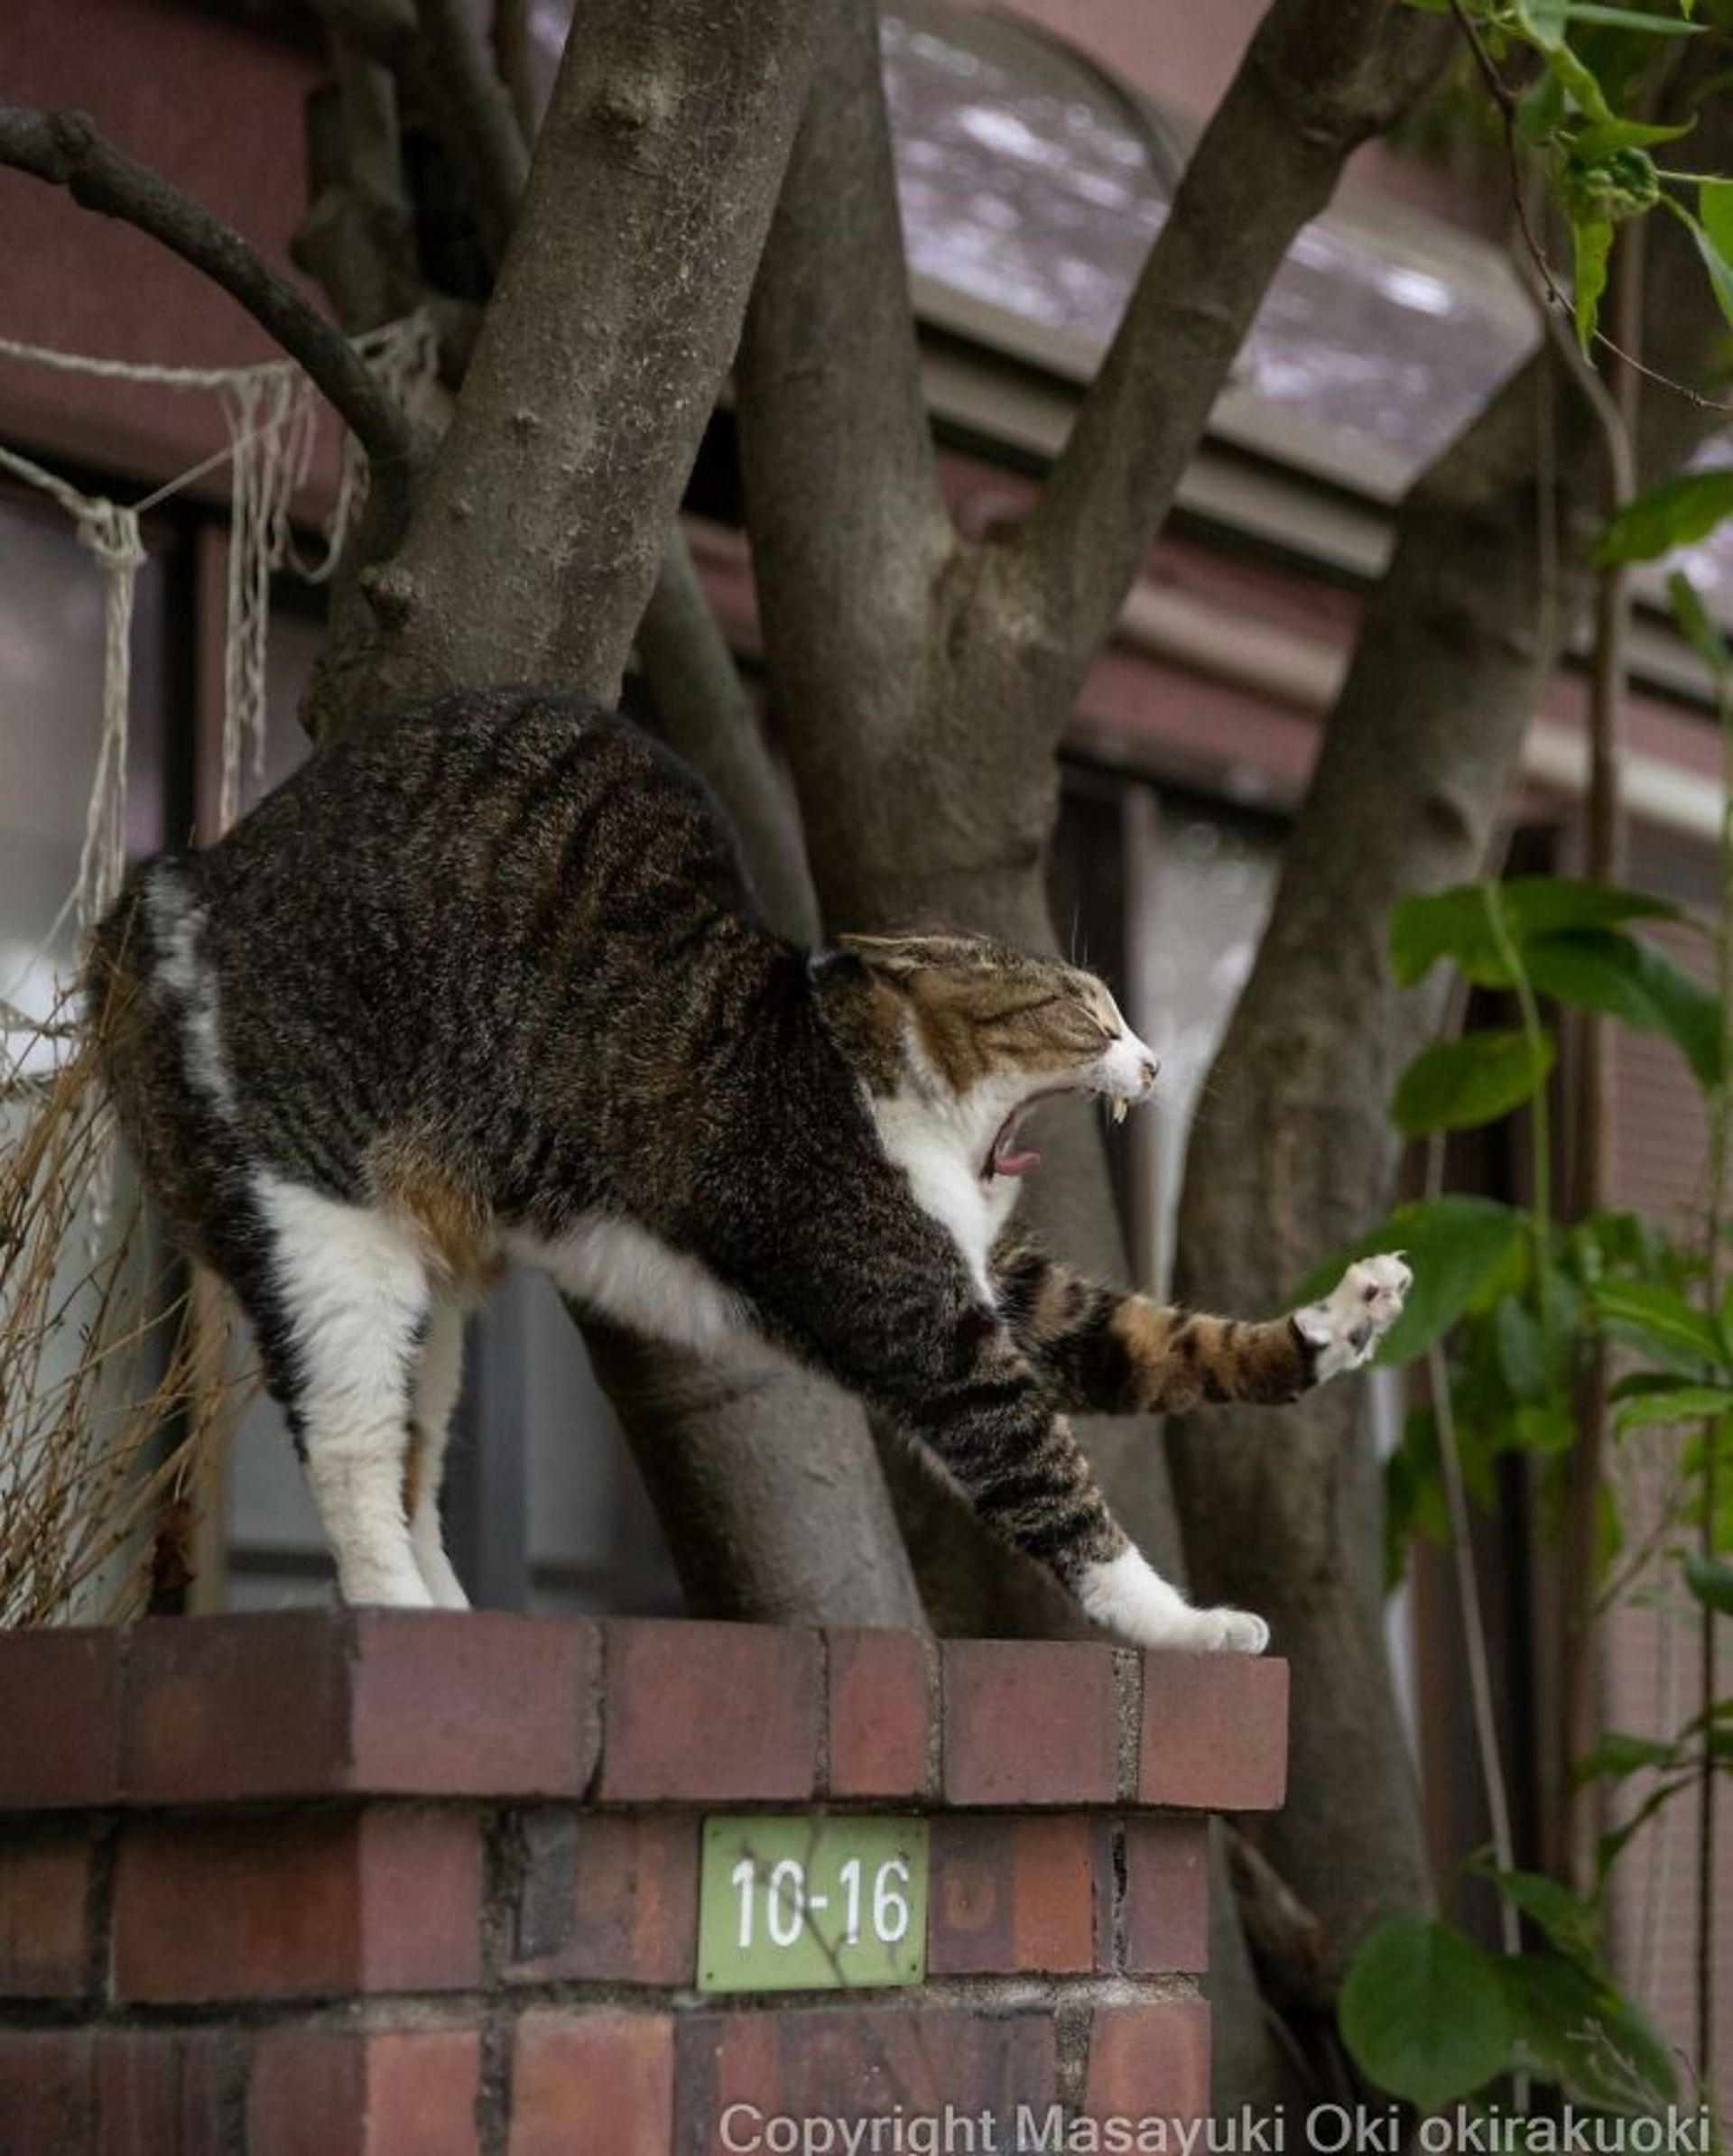 گربه در حال کش و قوس بالای دیوار